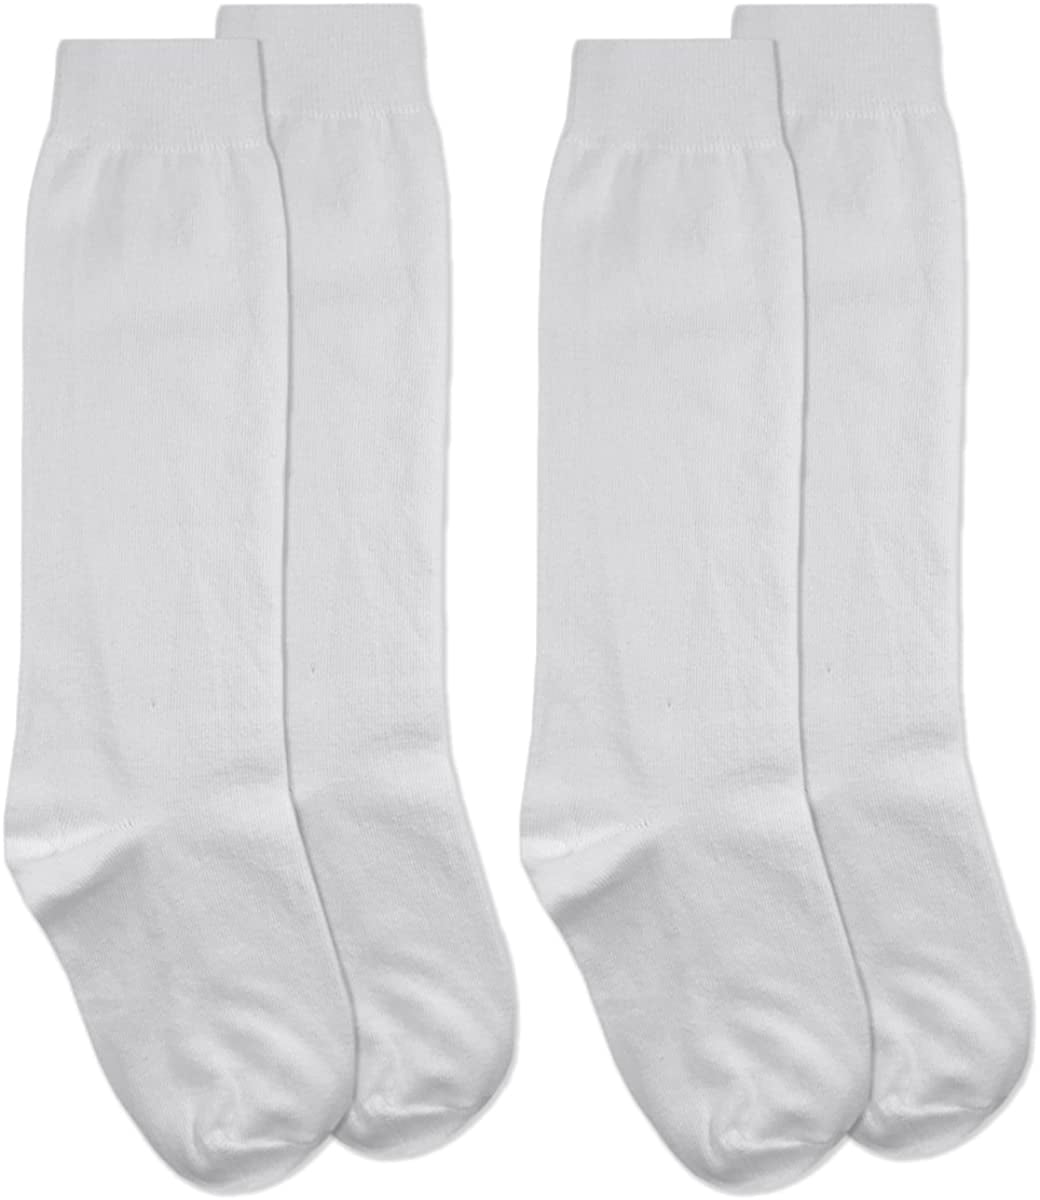 Jefferies Socks Boys Nylon Dress Knee High Socks 2 Pair Pack 